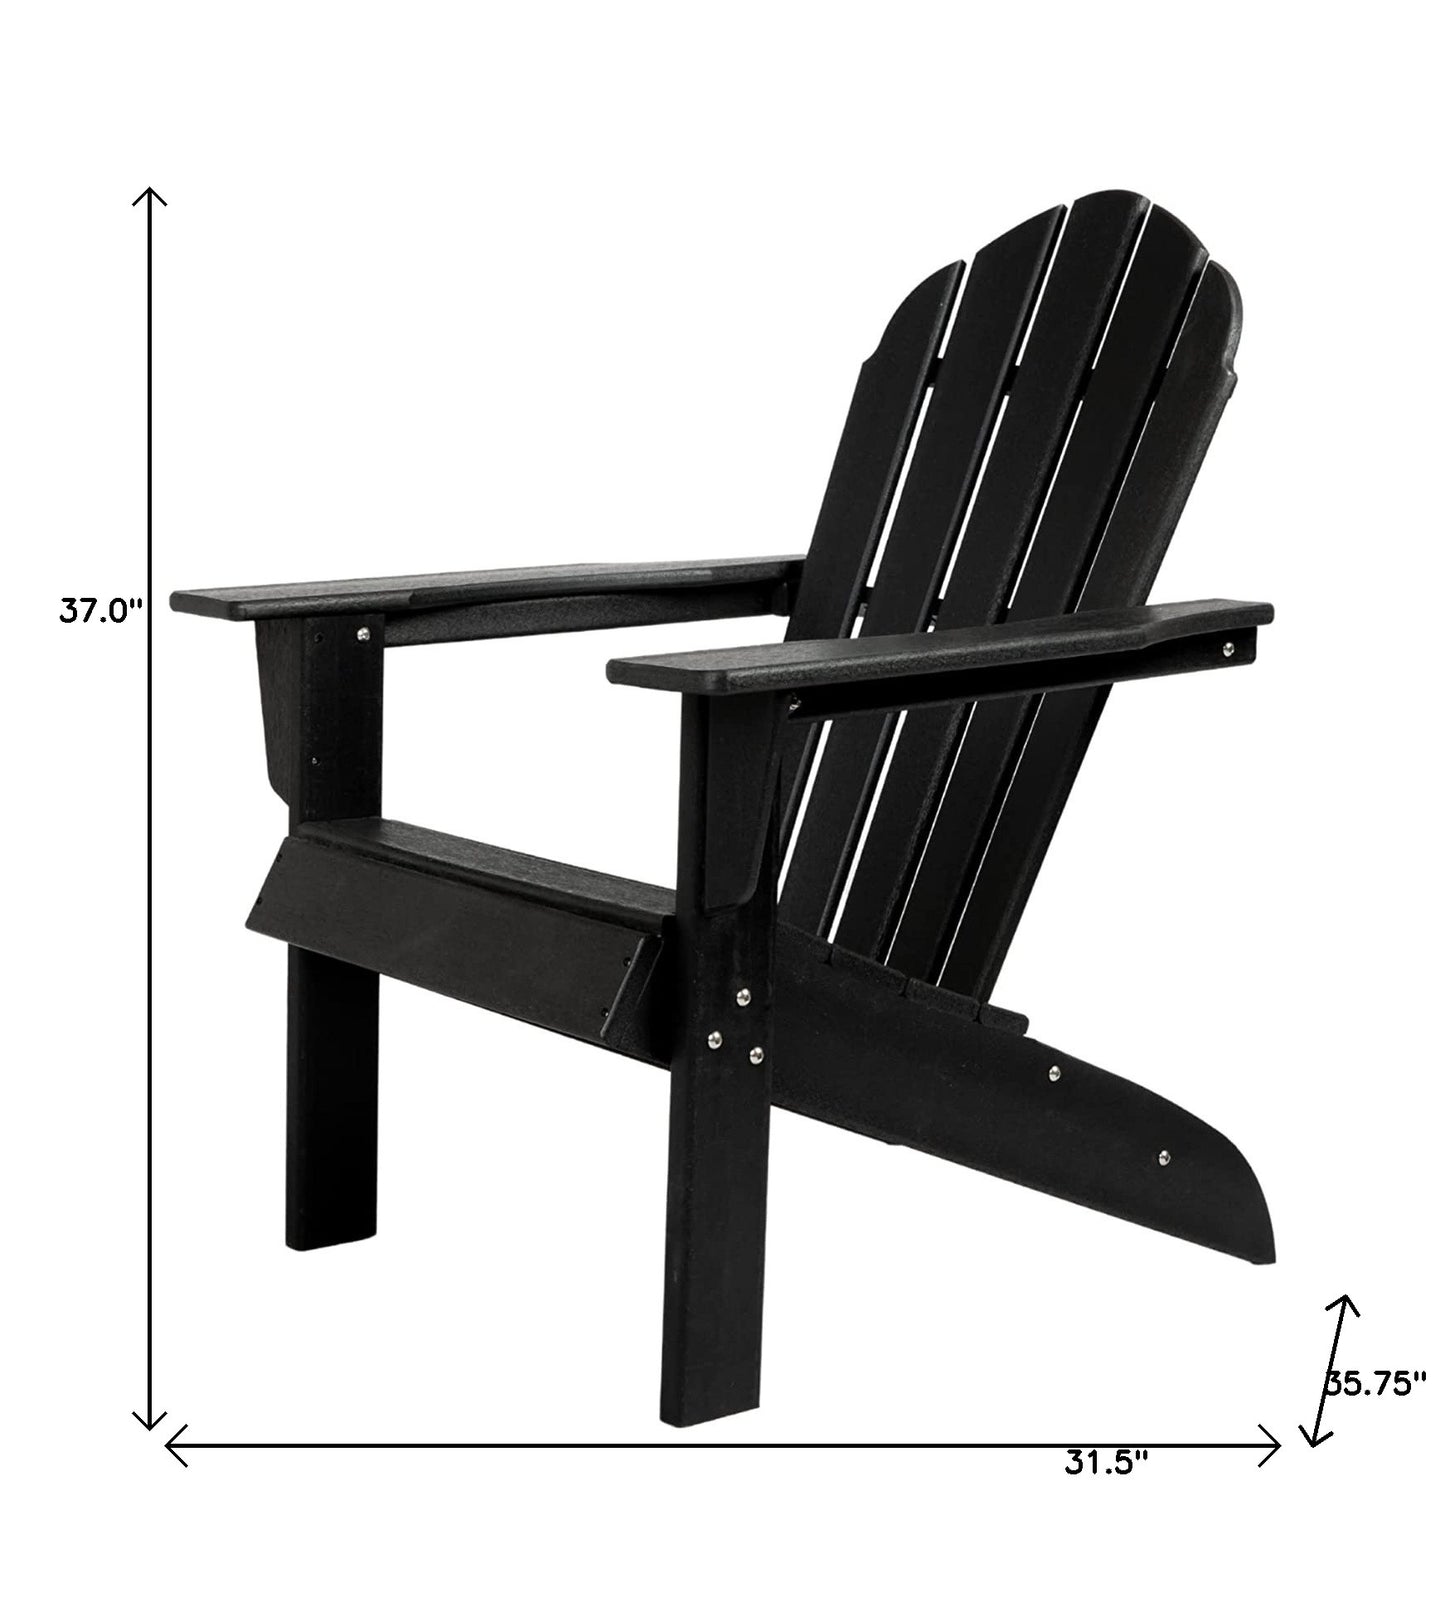 32" Black Heavy Duty Plastic Indoor Outdoor Adirondack Chair